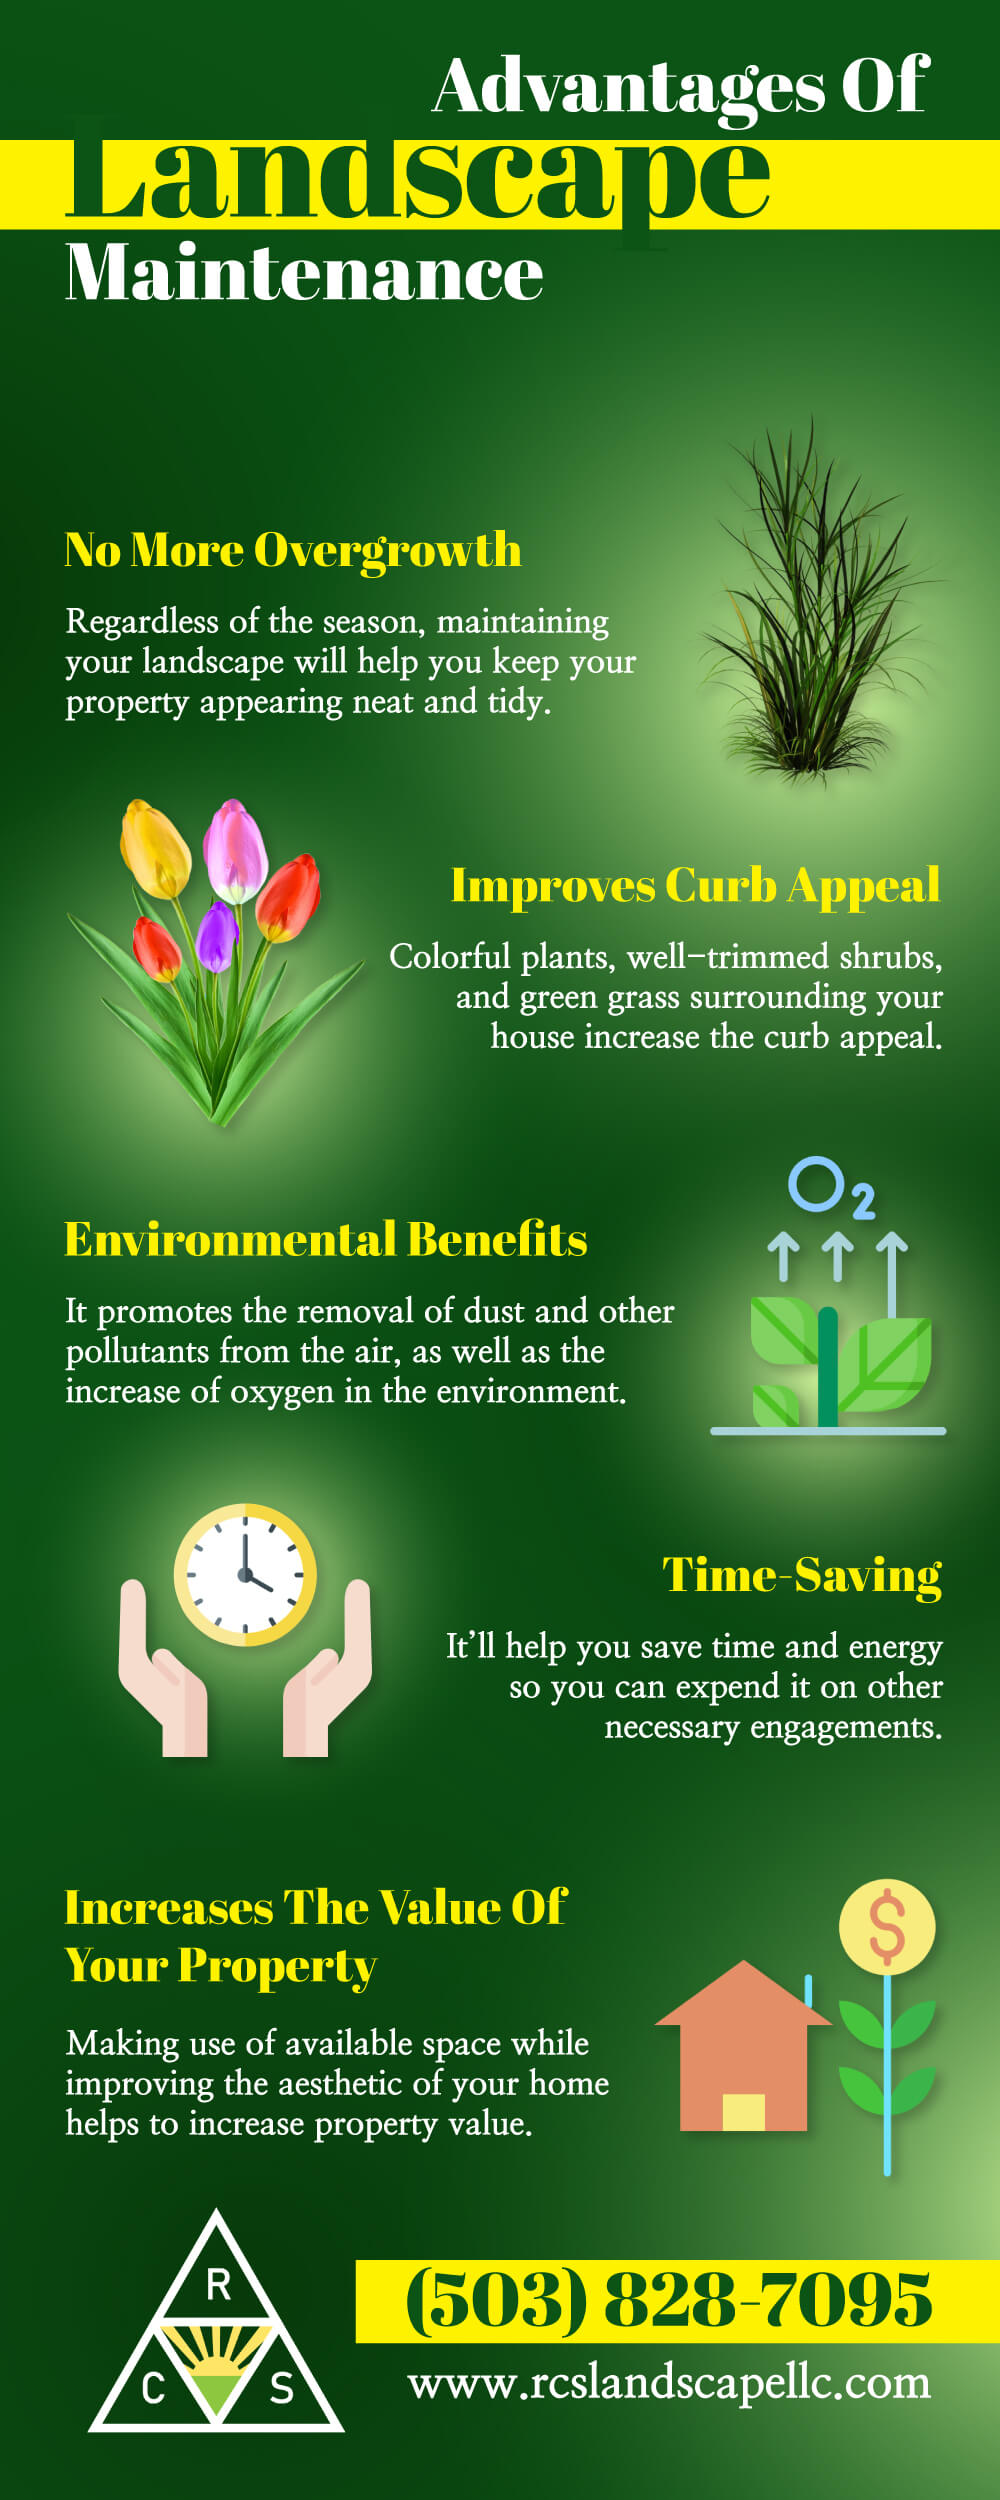 Advantages of Landscape Maintenance